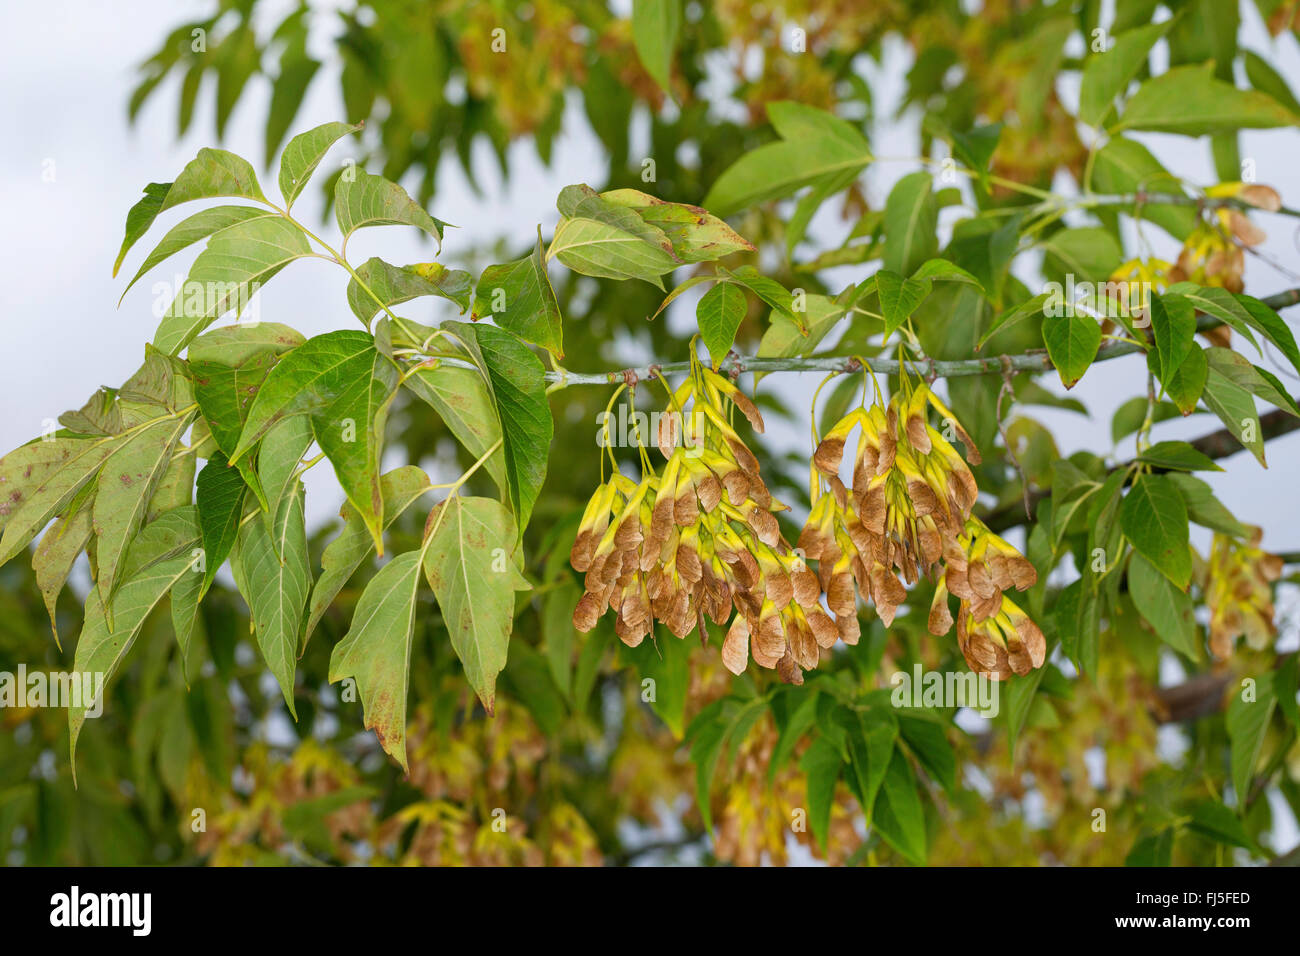 ashleaf maple, box elder (Acer negundo, Acer fraxinifolium, Negundo fraxinifolium), branch with fruits, Germany Stock Photo